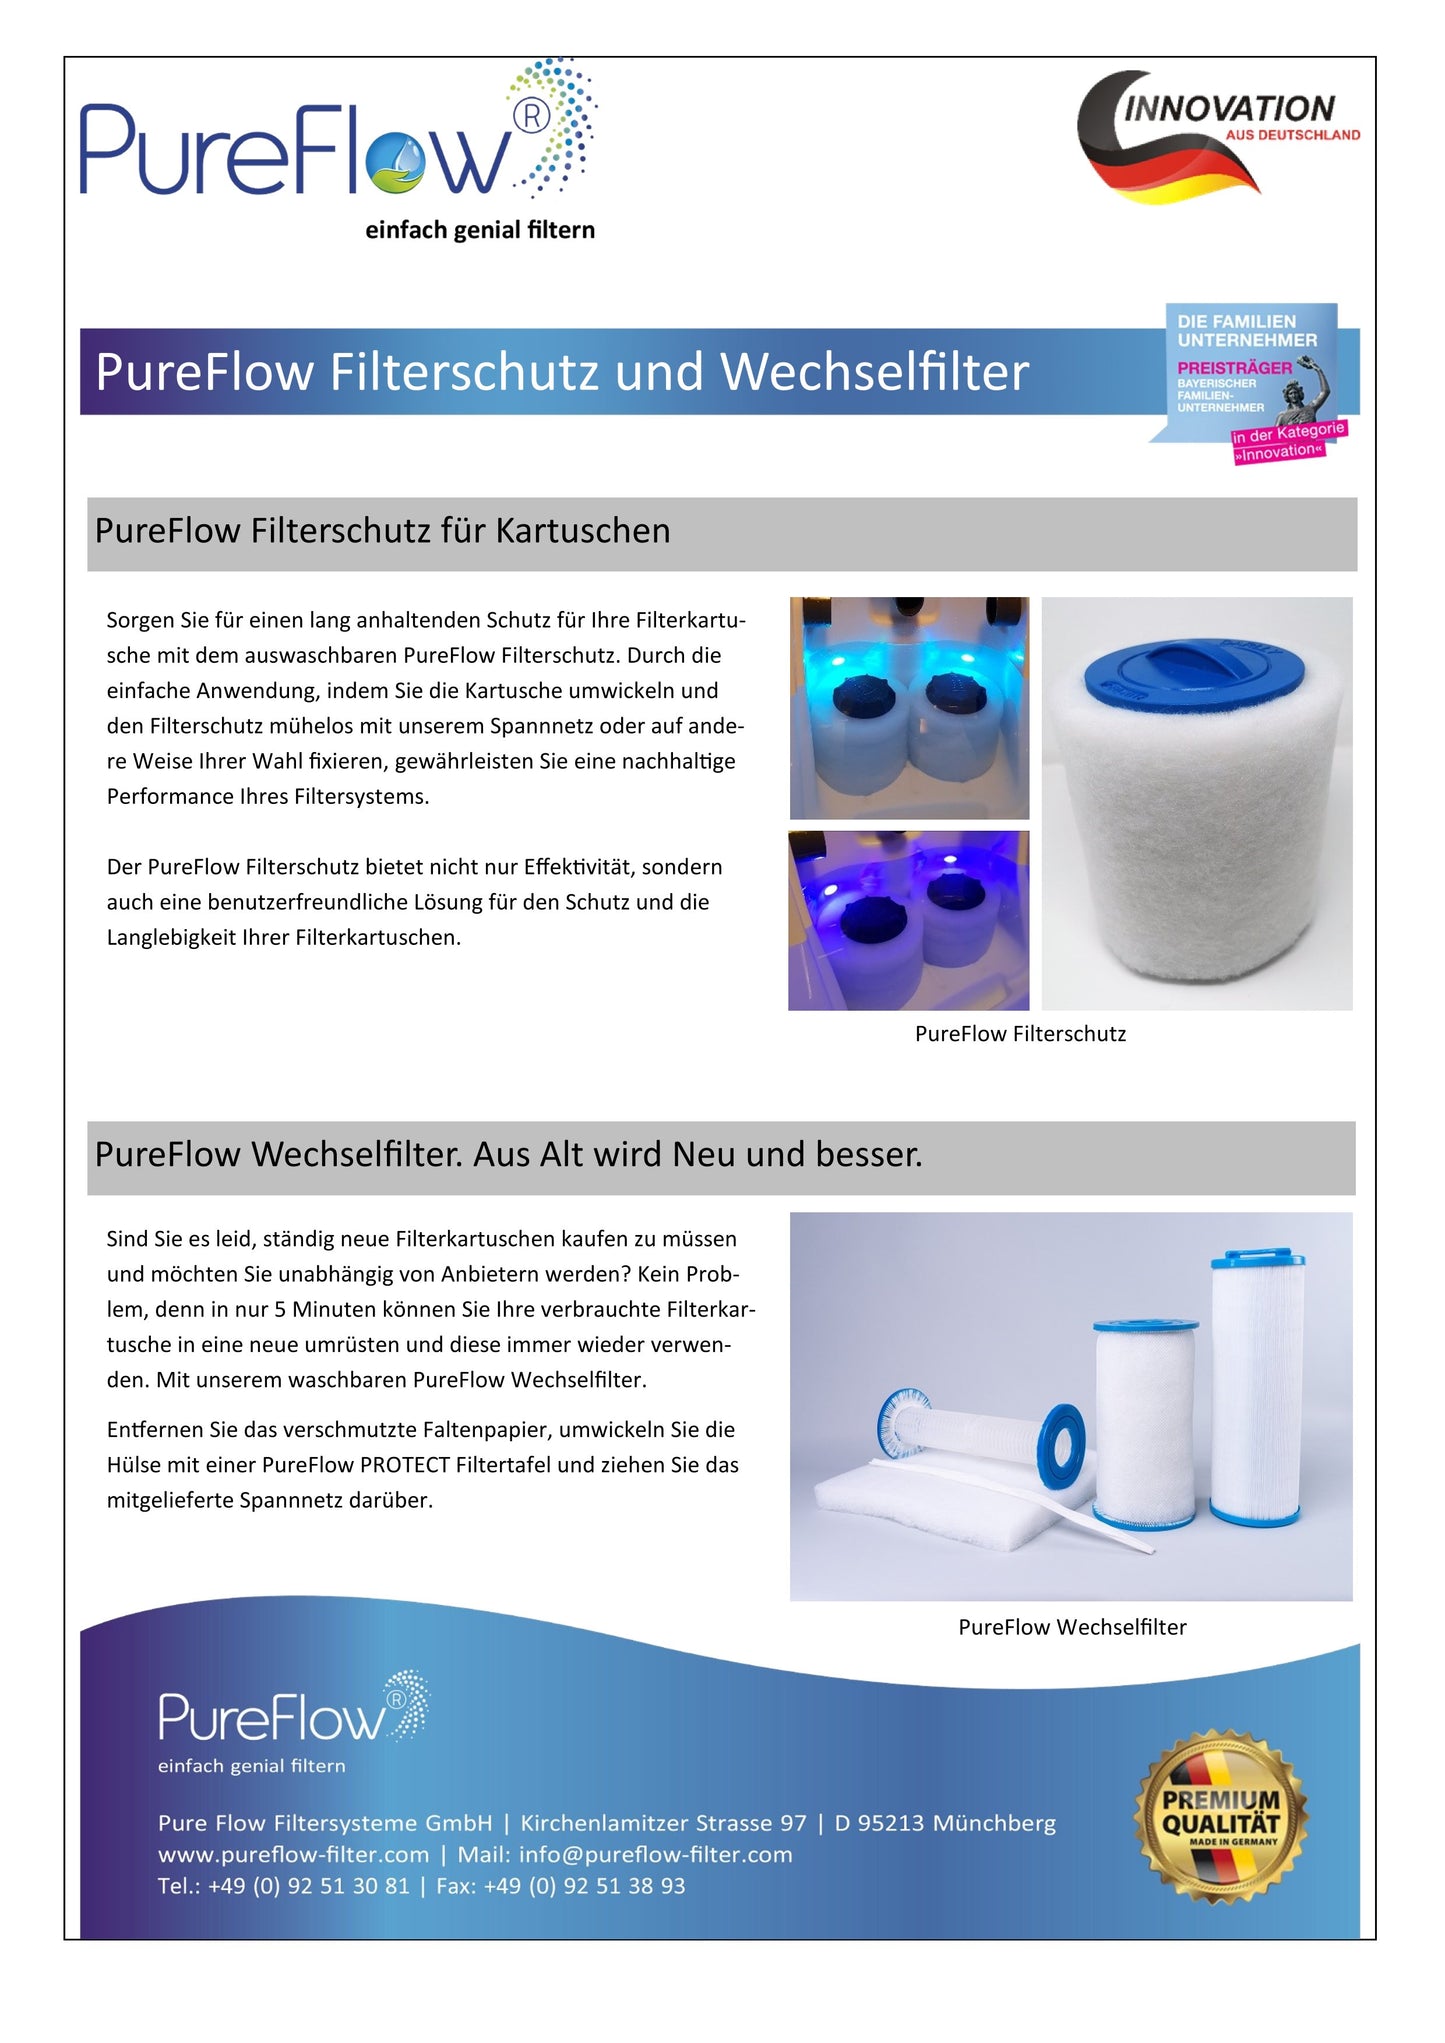 PureFlow PROTECT. Schützt schwer zu reinigende Original-Filterkartuschen und erhöht gleichzeitig die Filterleistung, verlängert die Lebensdauer und ist auswaschbar.